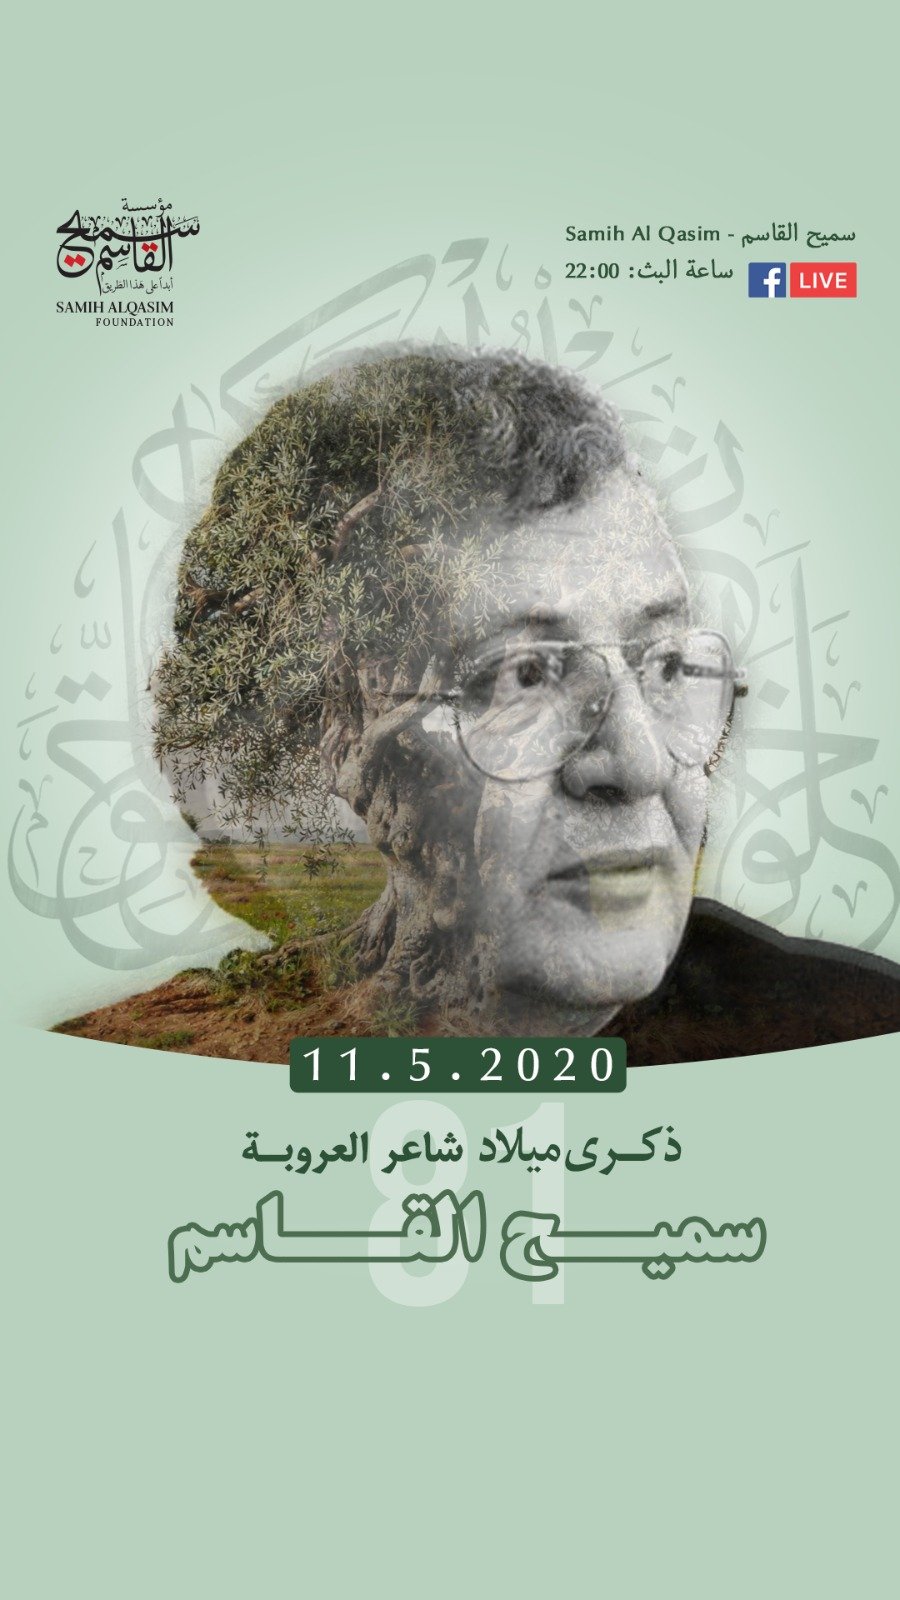 نشر فيديوهات للشاعر الكبير سميح القاسم على الفيسبوك بمناسبة ذكرى ميلاده اليوم-0